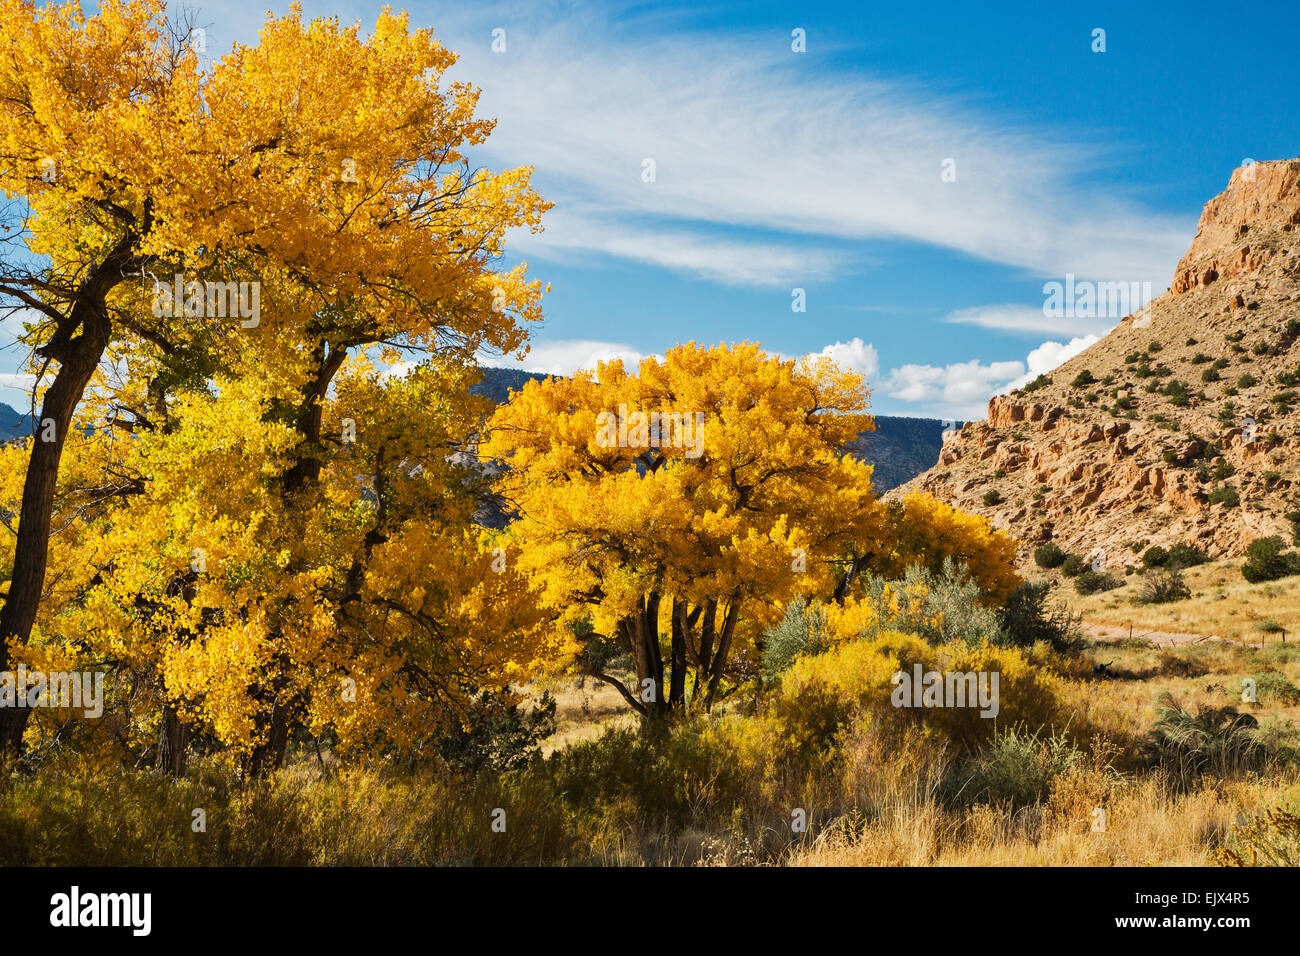 Pioppi neri americani treess sul Chama Fiume nei pressi del villaggio di Abiquiu nel New Mexico settentrionale girare un brillante giallo dorato. Foto Stock